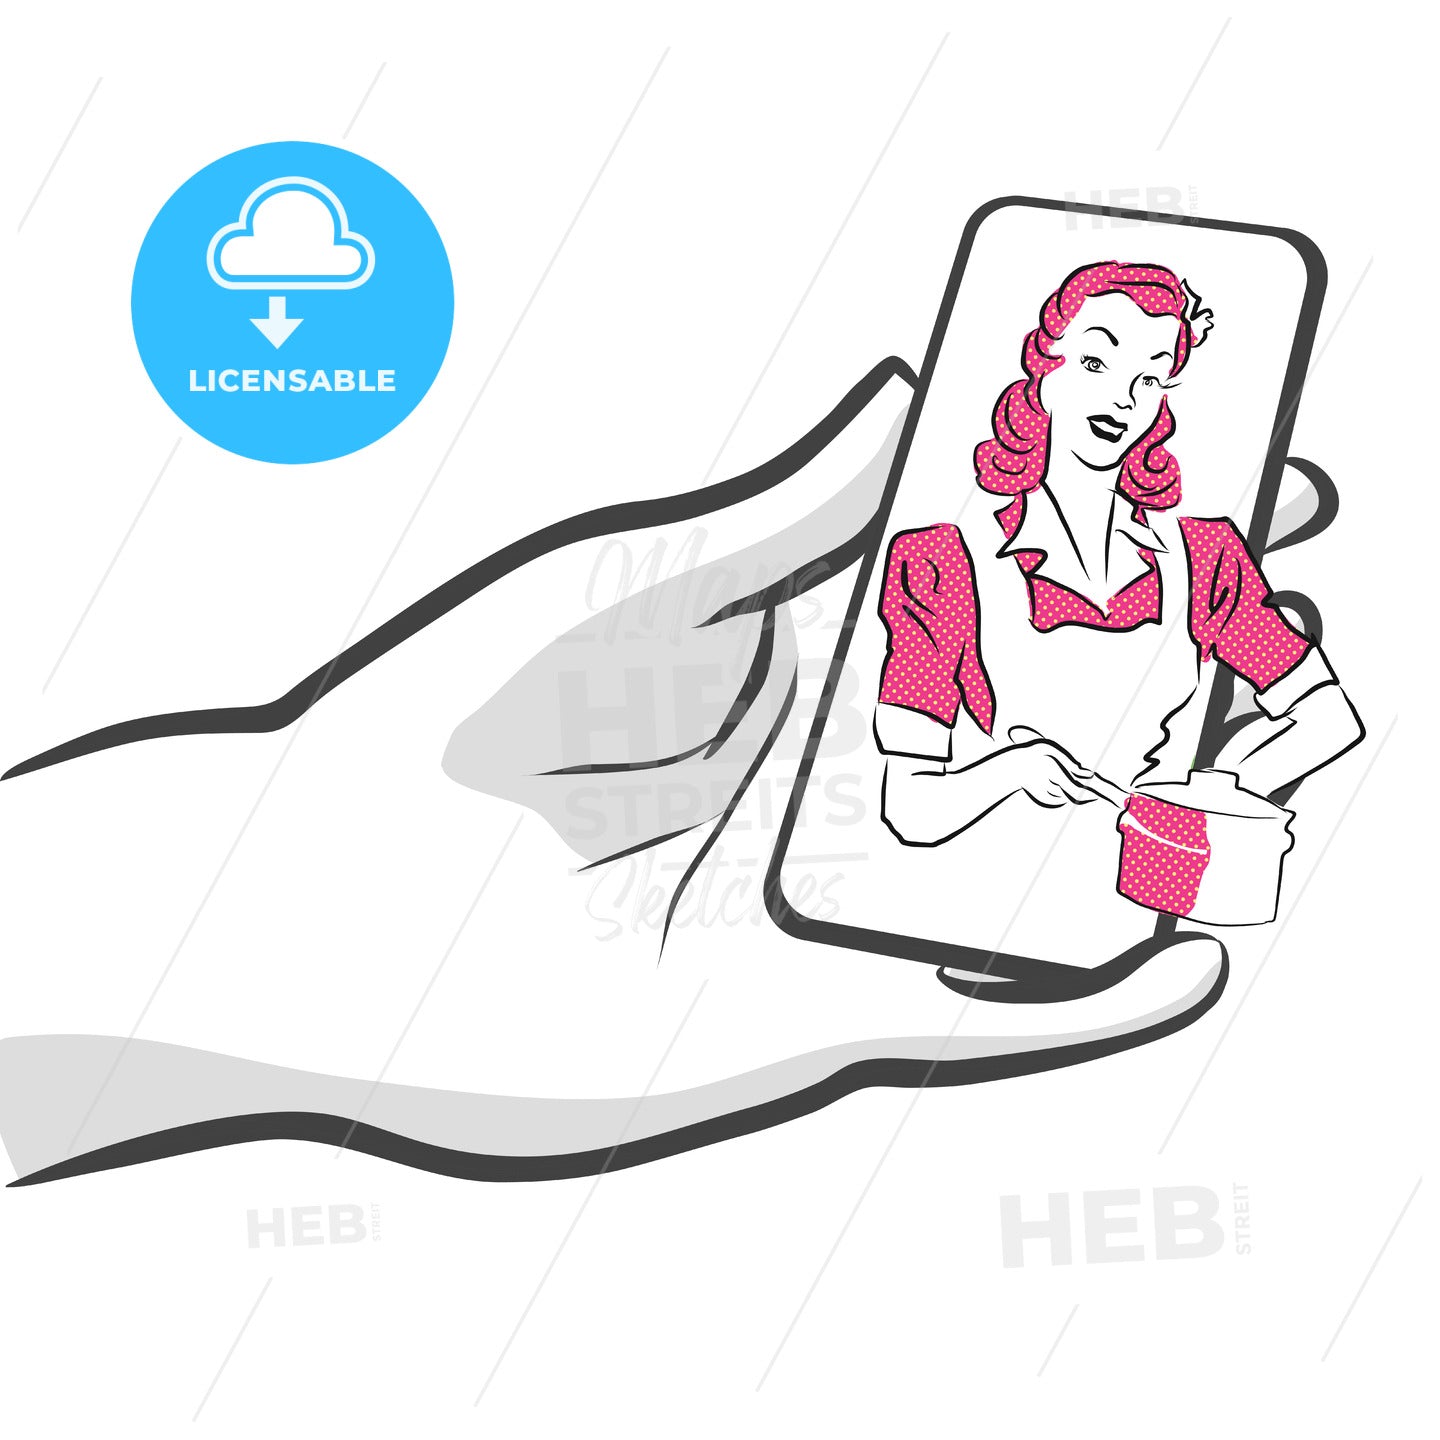 Mobile Food Delivery Service app, Concept Artwork – instant download